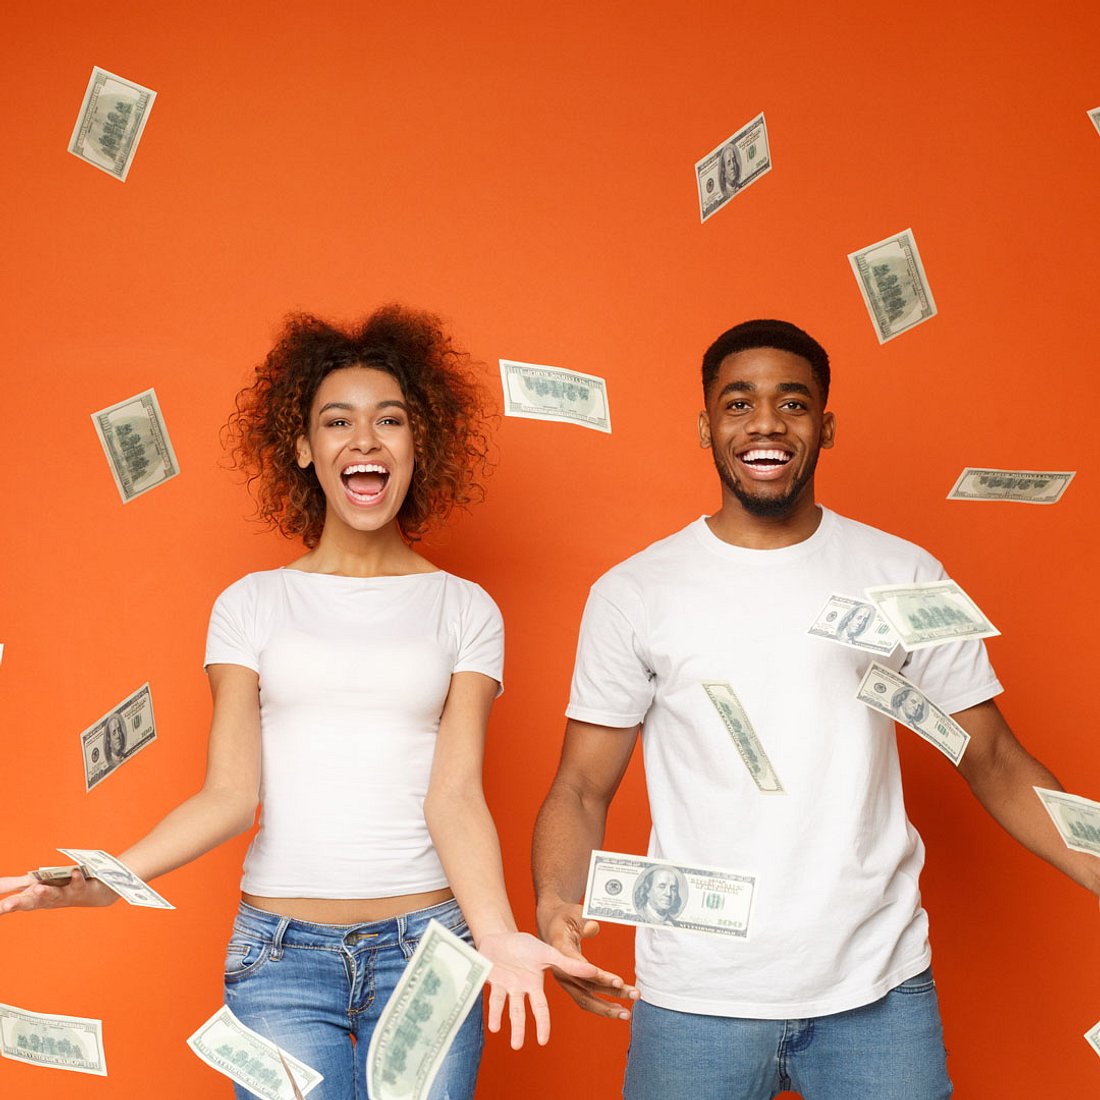 Studie deckt auf: So viel Geld macht glücklich